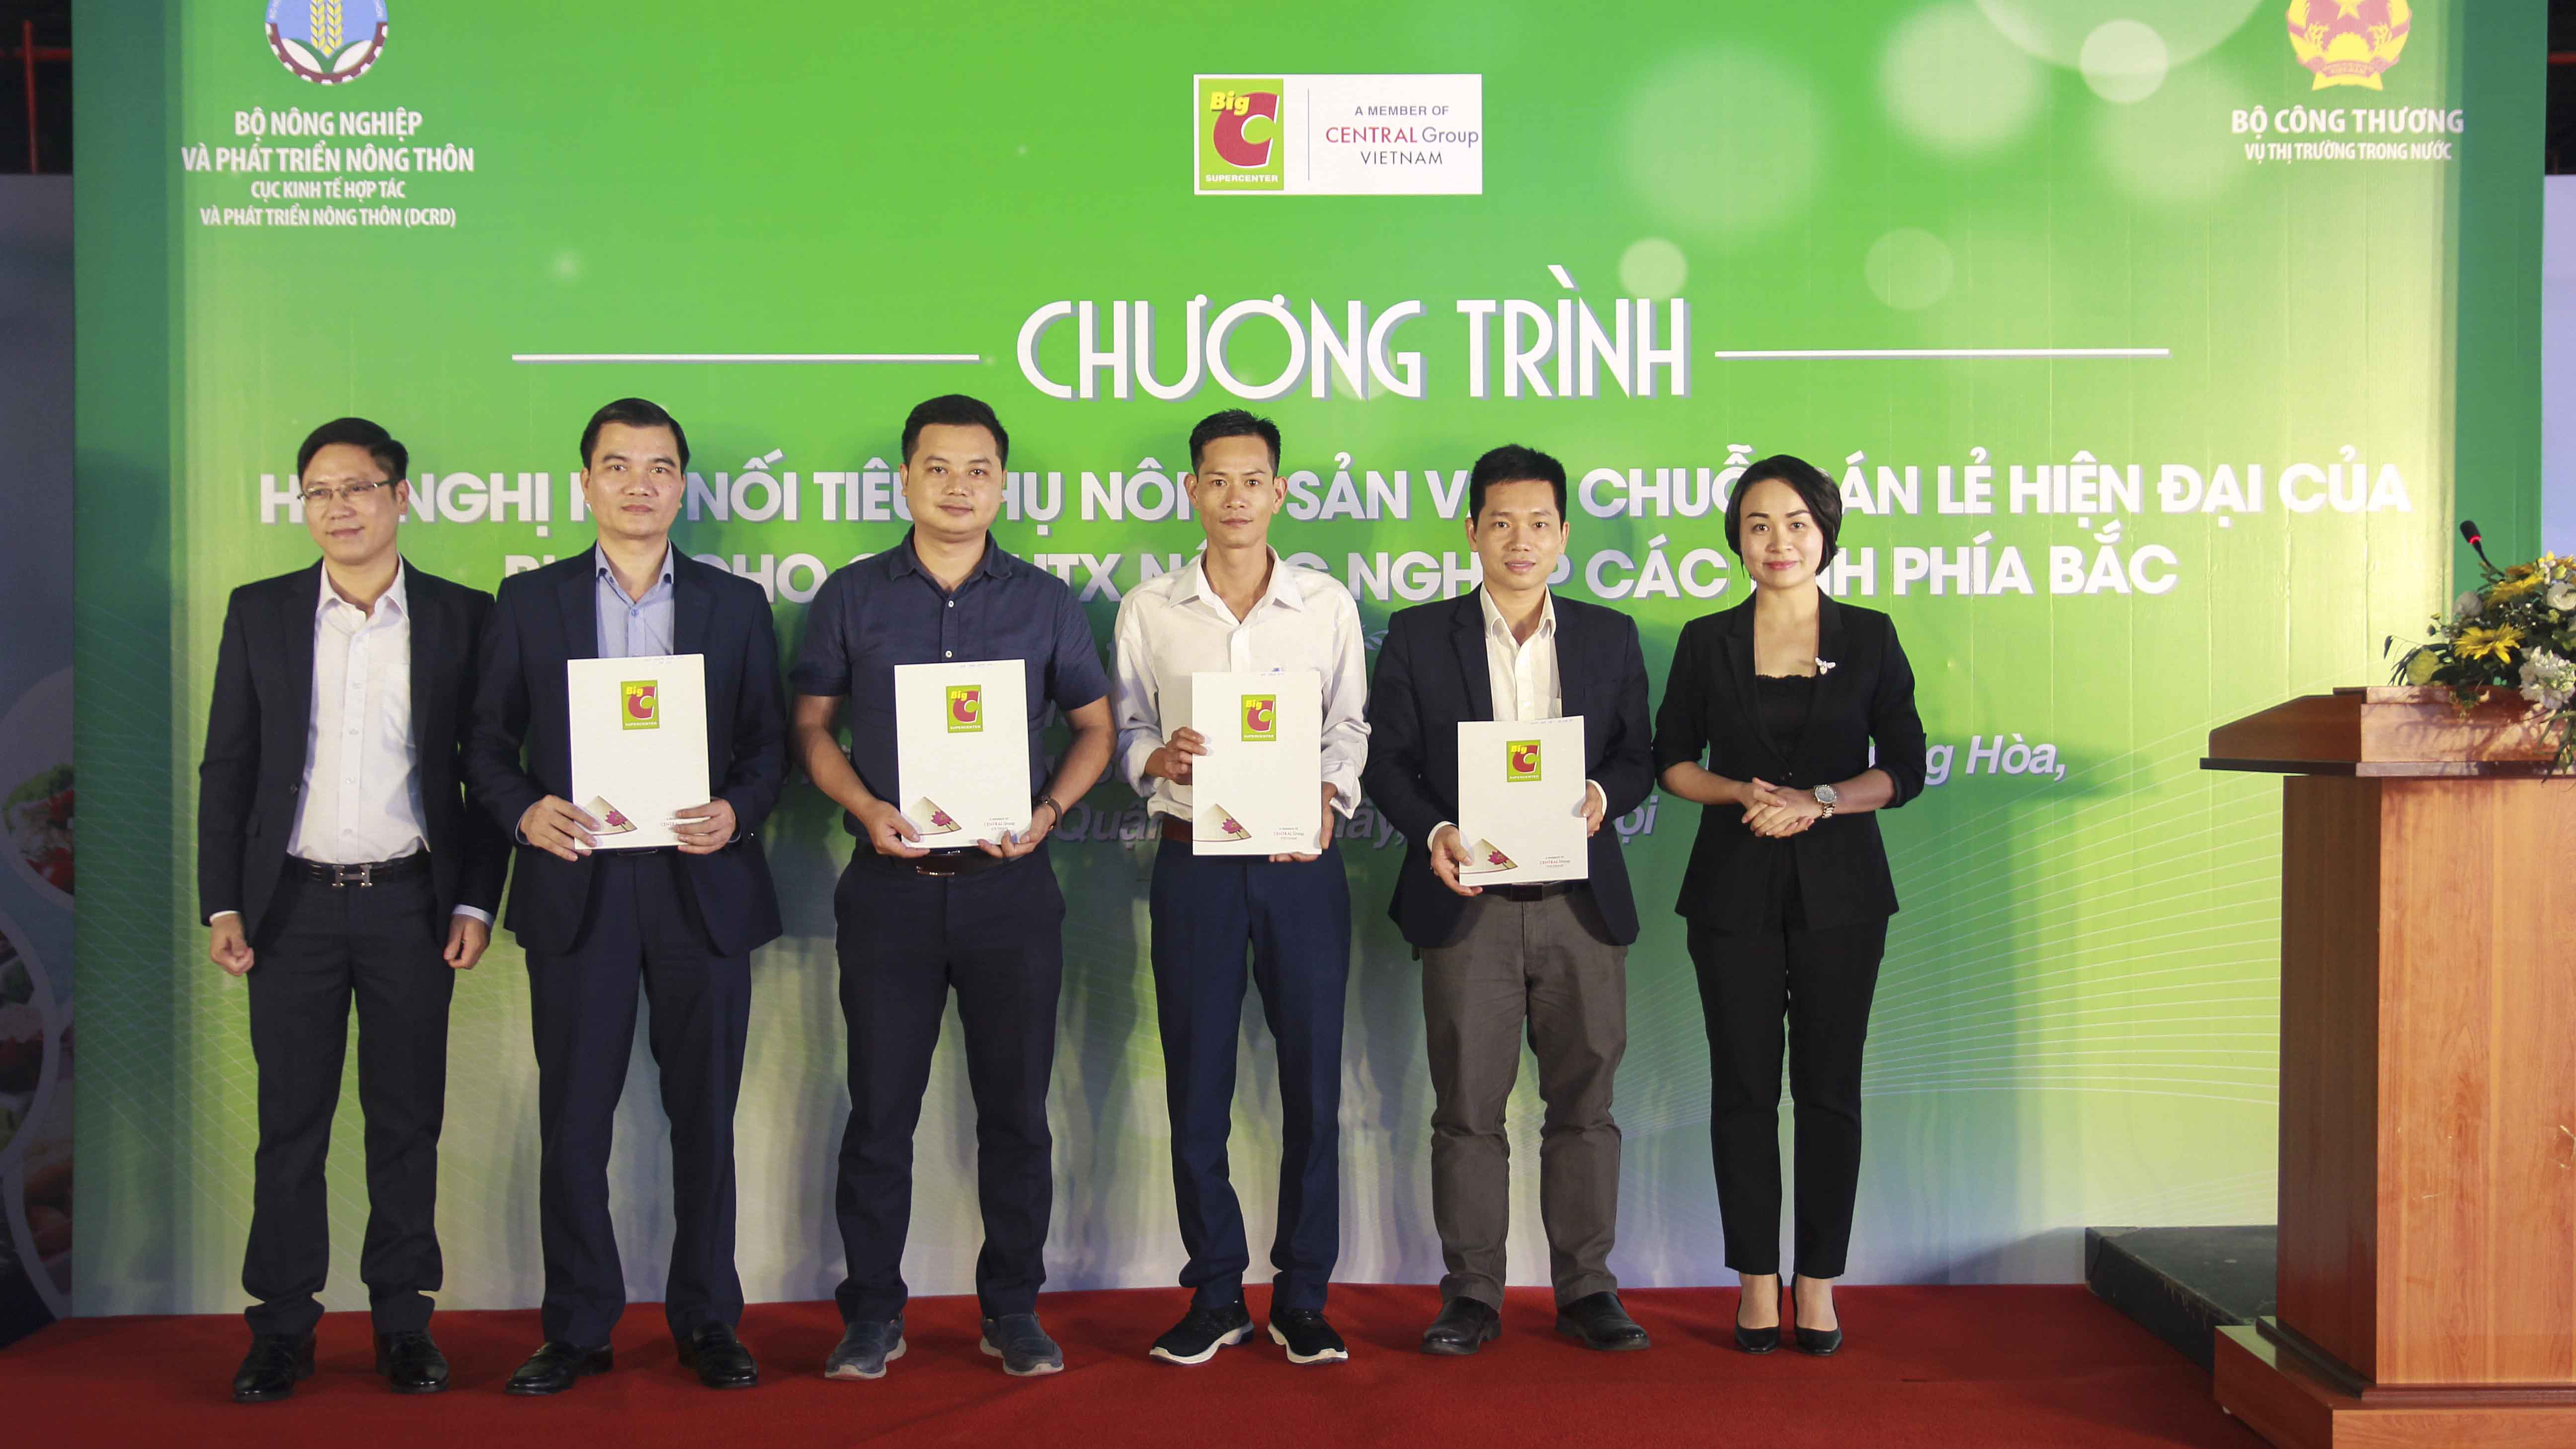 Hội nghị kết nối tiêu thụ nông sản vào chuỗi bán lẻ hiện đại của Big C Việt Nam cho các Hợp tác xã nông nghiệp các tỉnh phía Bắc chiều 9/4/2019